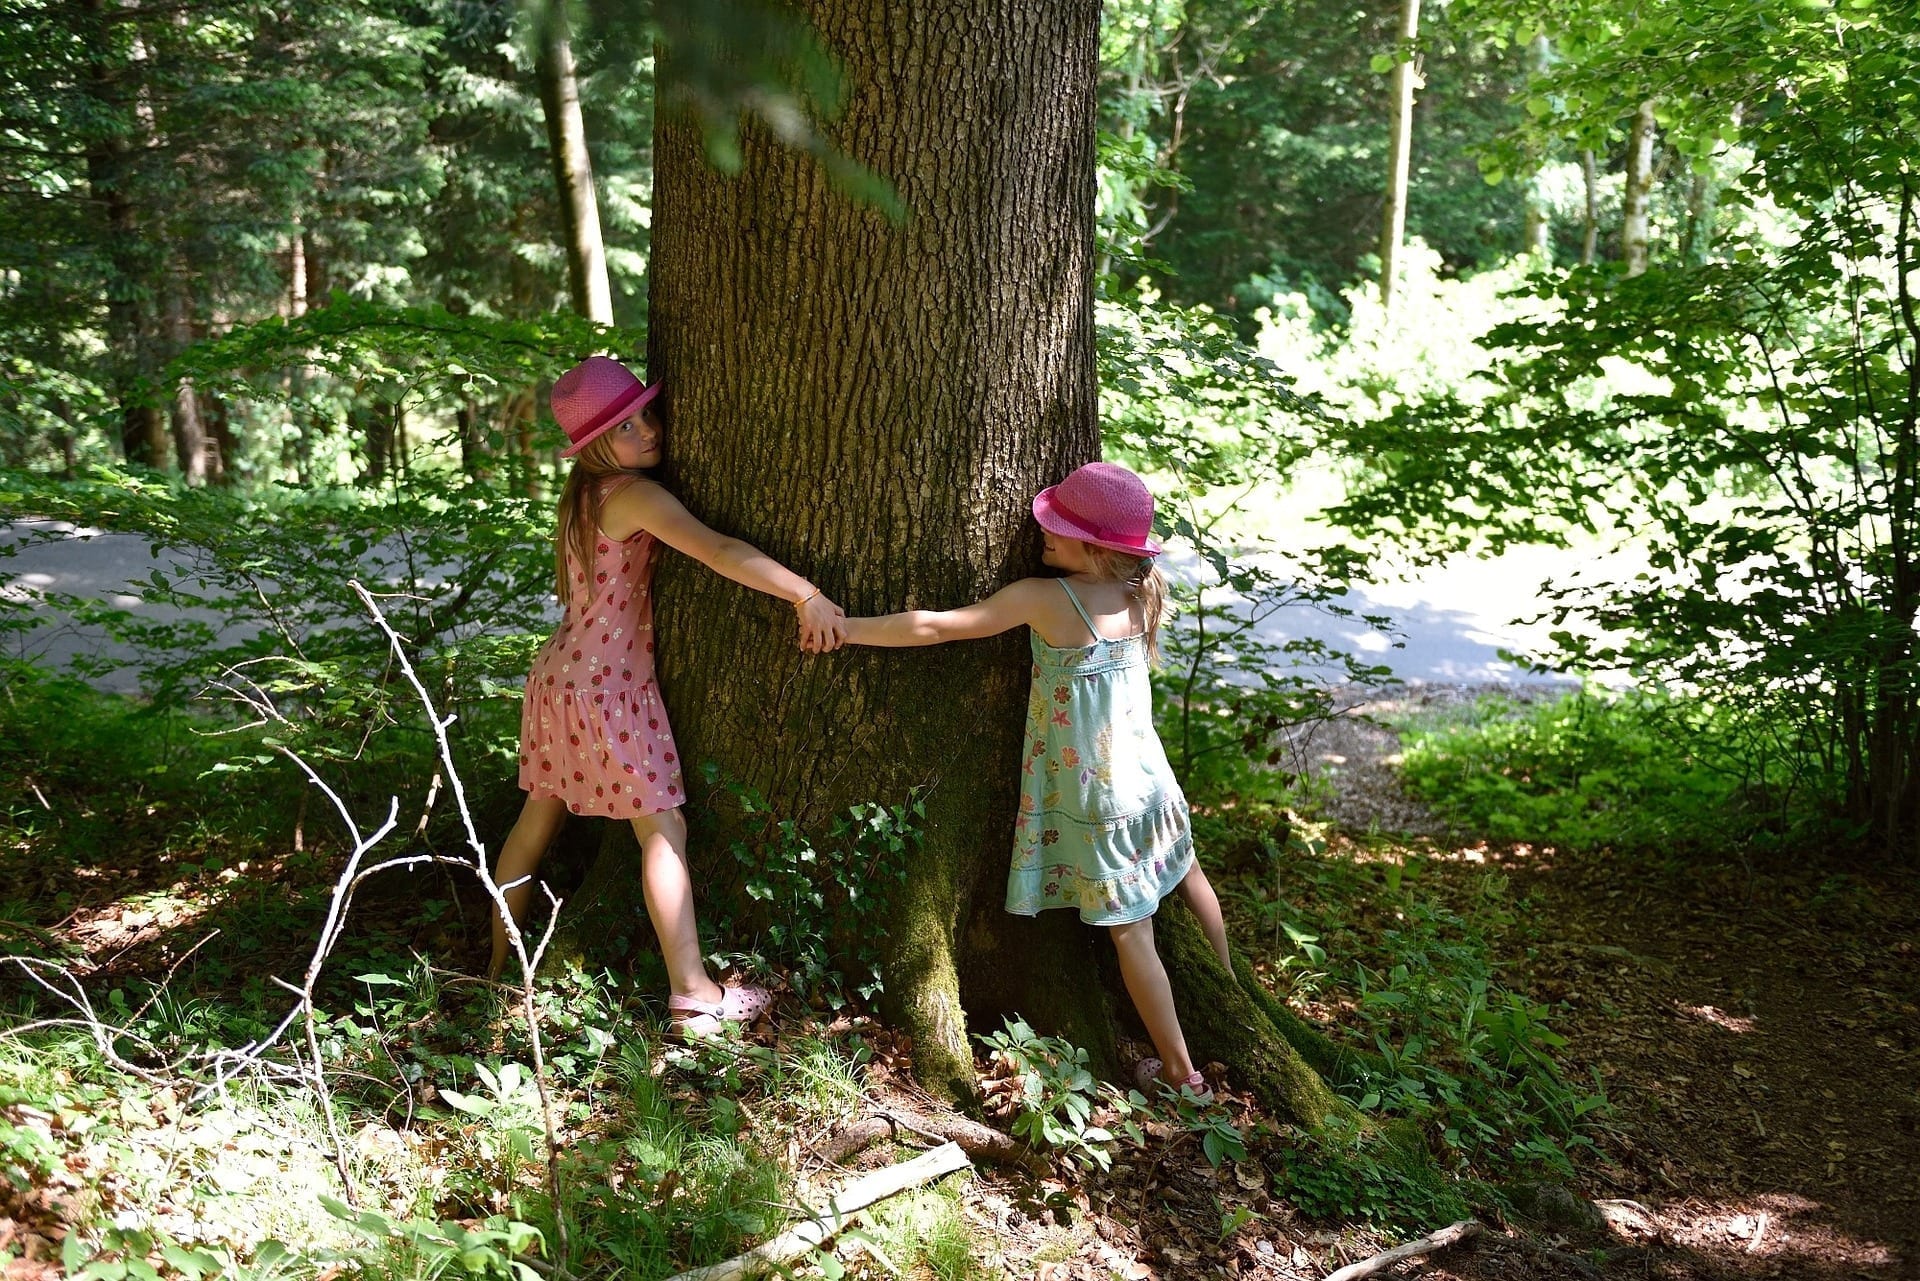 Natura ed educazione: ecco il progetto “Asilo nel bosco”